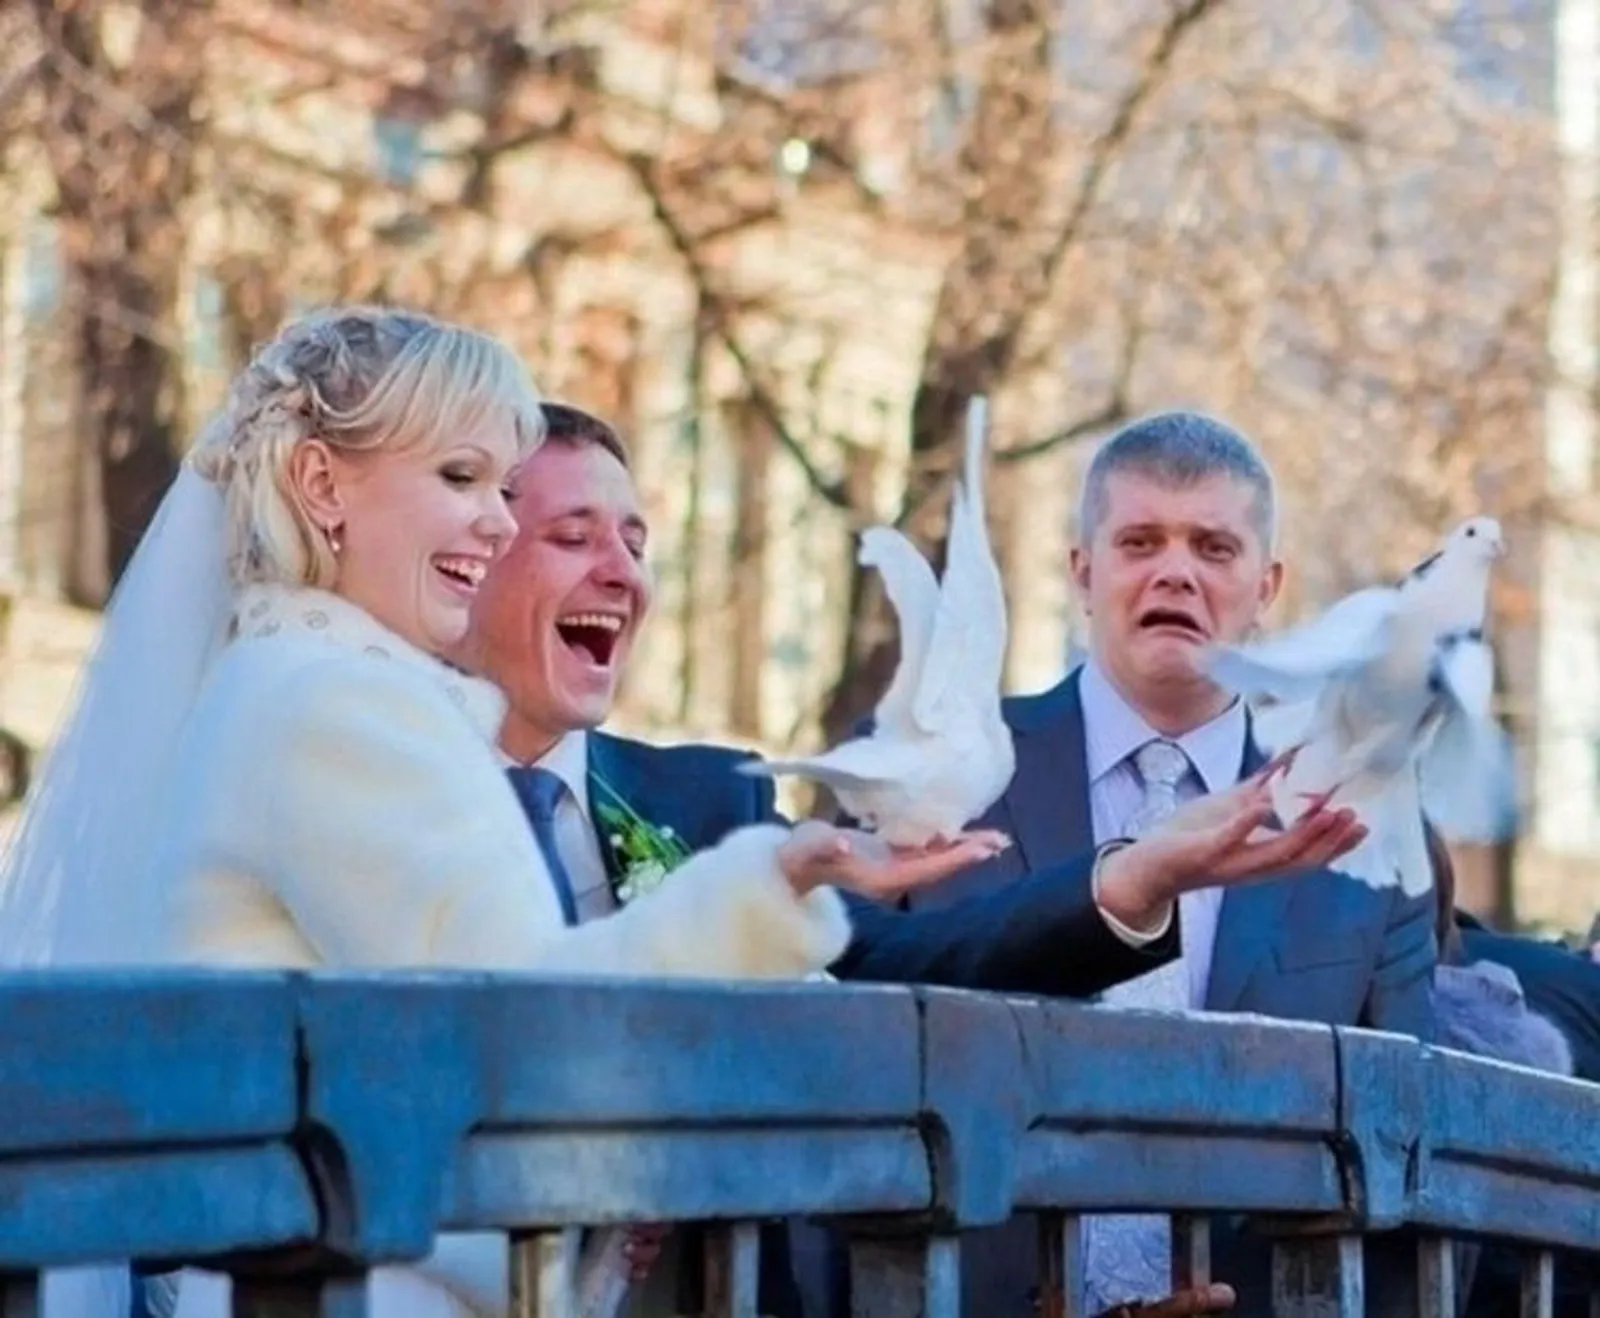 Kocak! Ini 11 Foto Gagal Saat Pernikahan yang Mengocok Perut